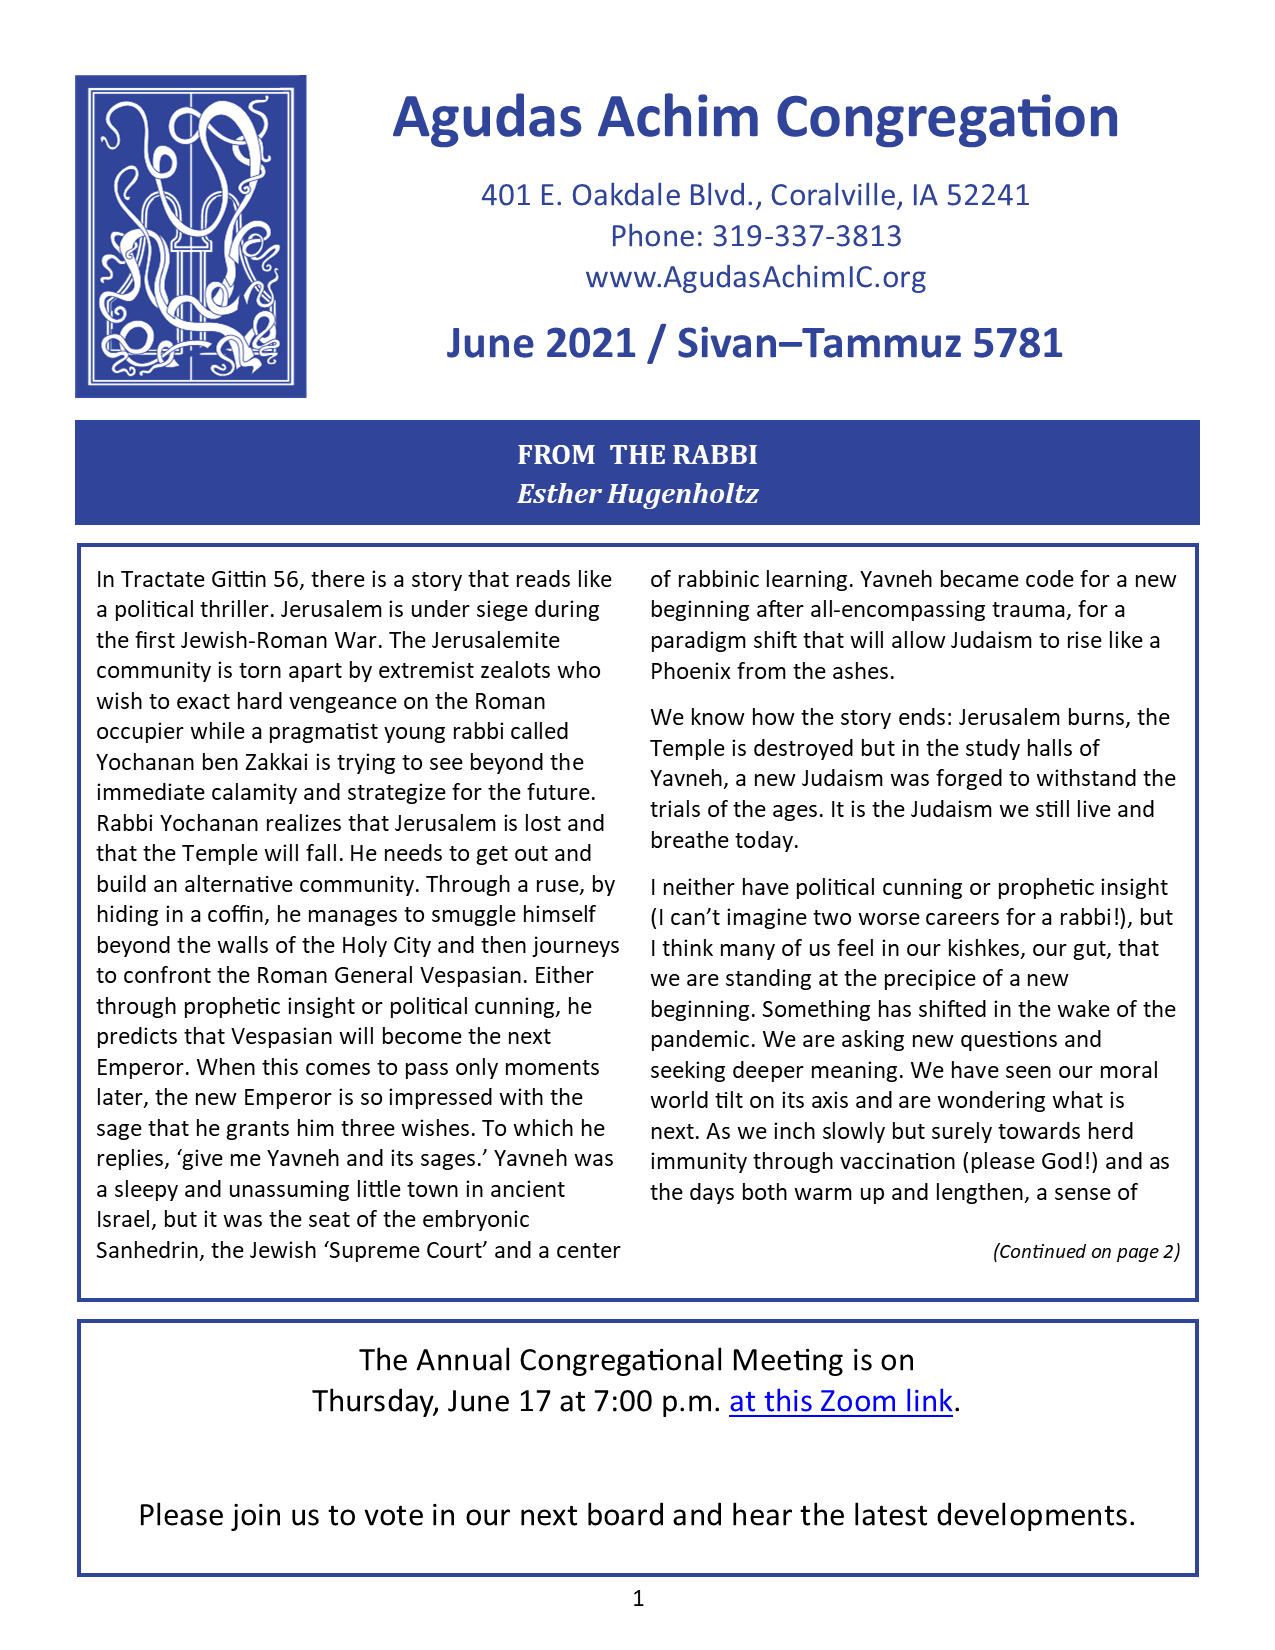 June 2021 Bulletin